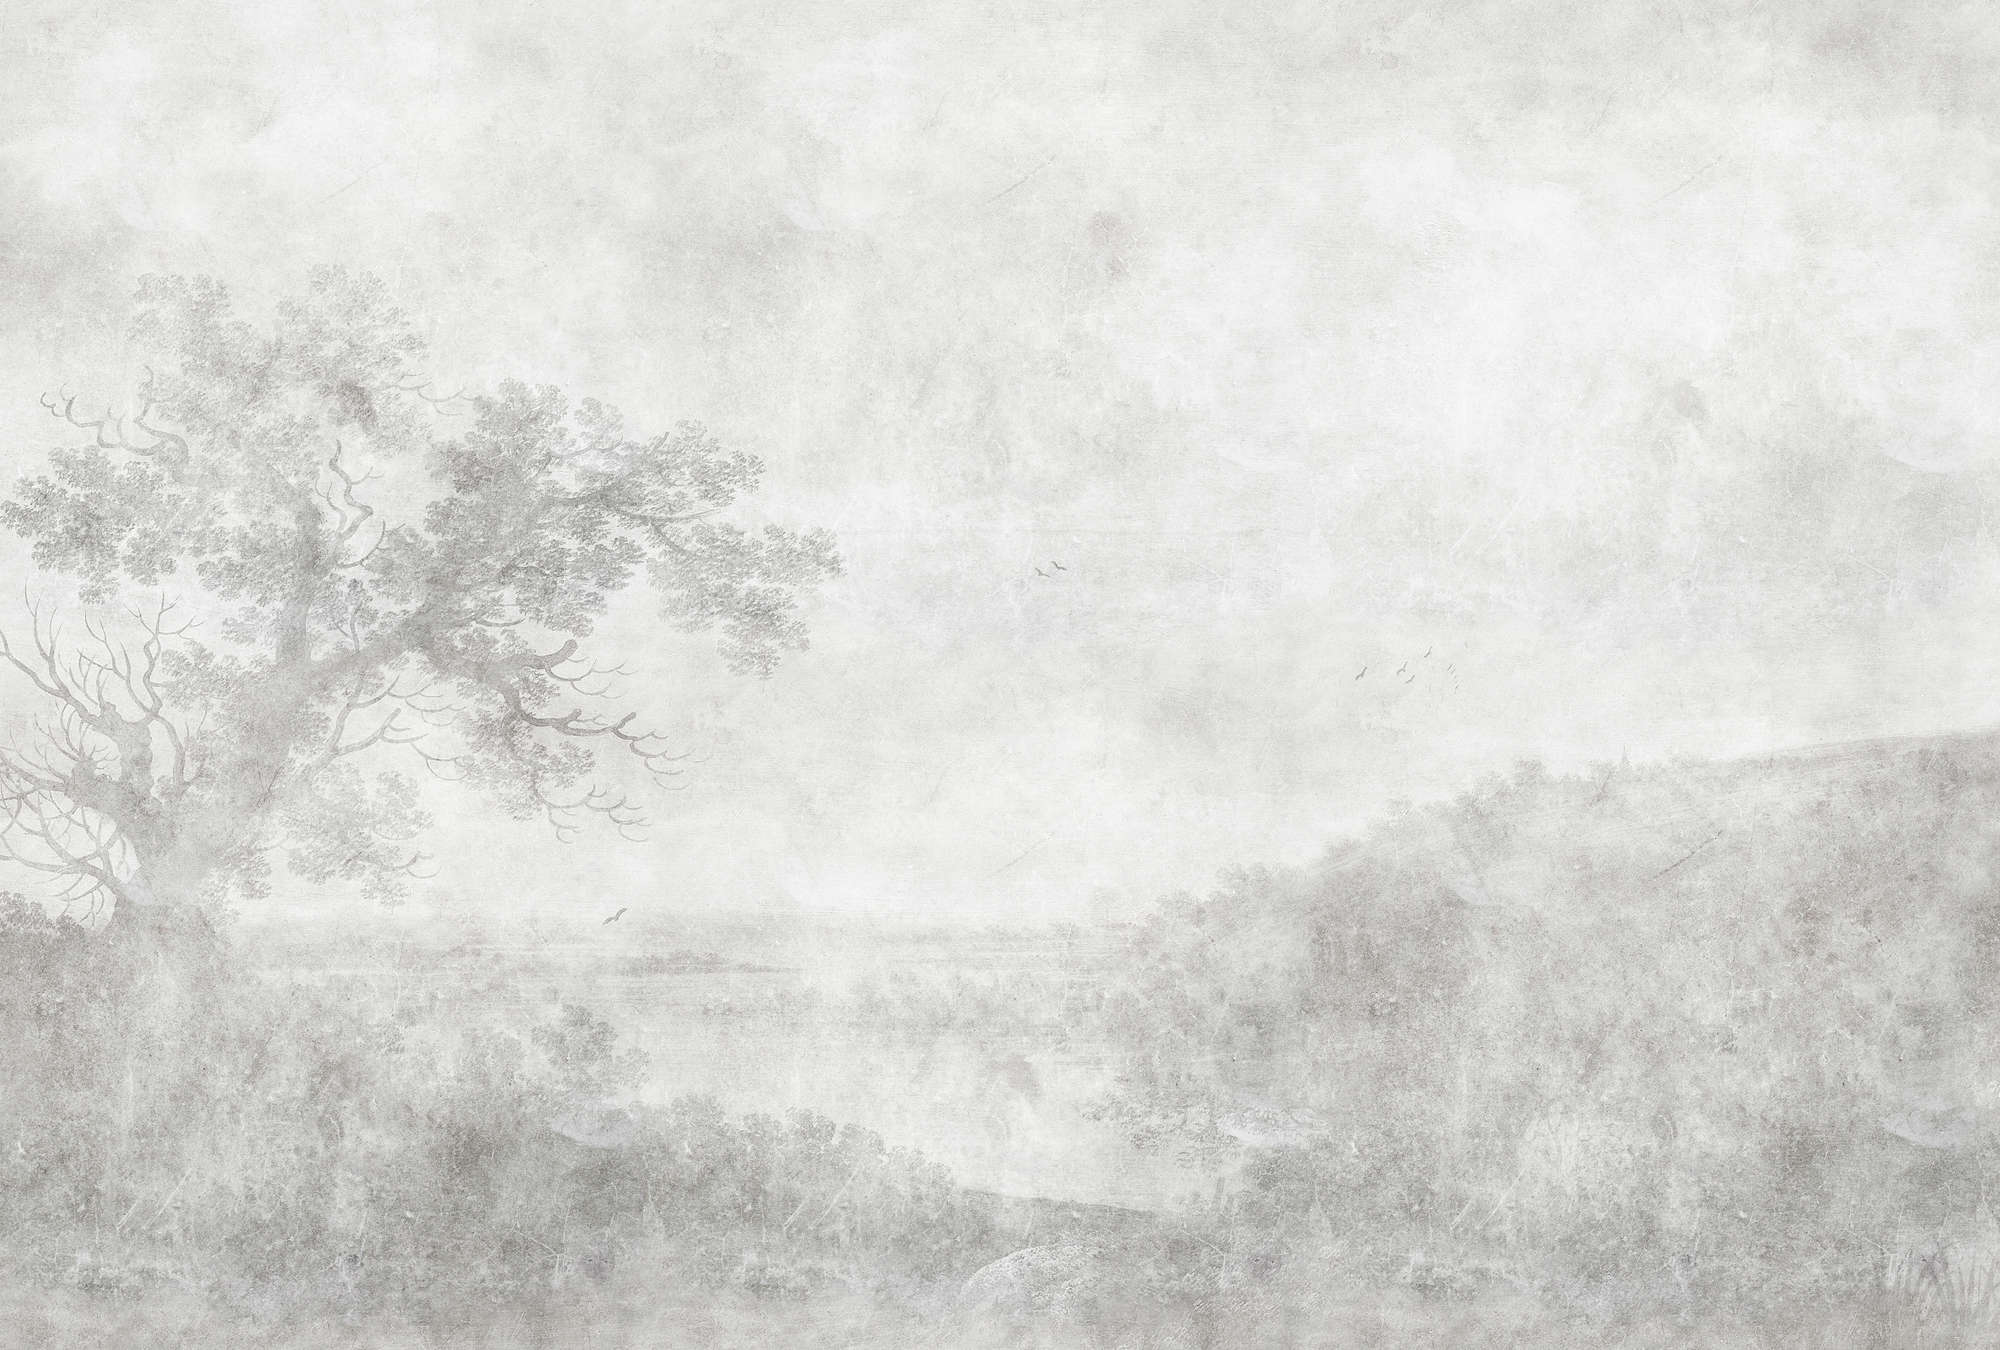             Romantic River 2 - Carta da parati in bianco e nero con dipinti d'epoca
        